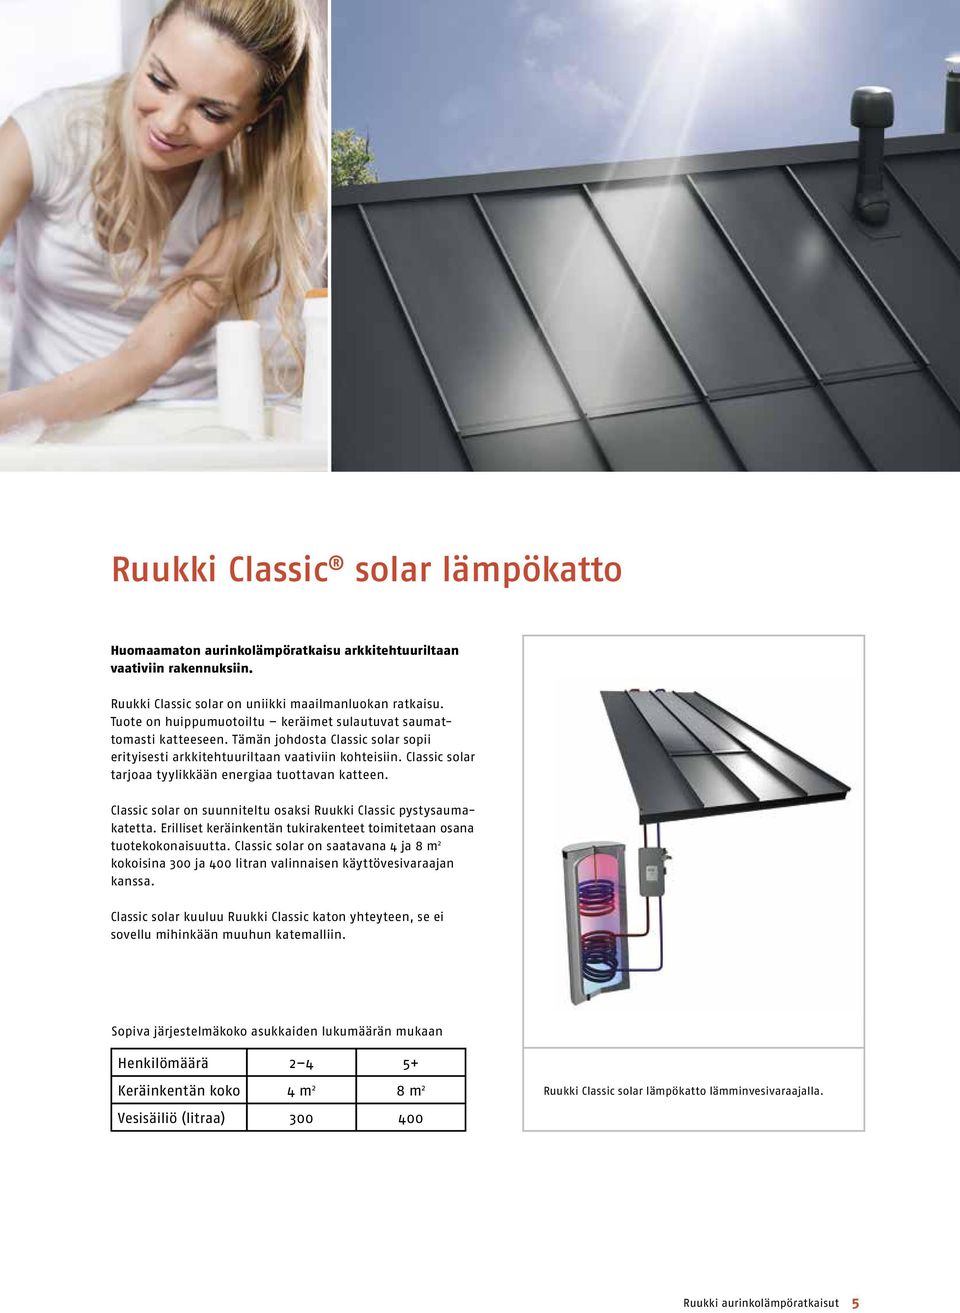 Classic solar tarjoaa tyylikkään energiaa tuottavan katteen. Classic solar on suunniteltu osaksi Ruukki Classic pysty sauma - katetta.